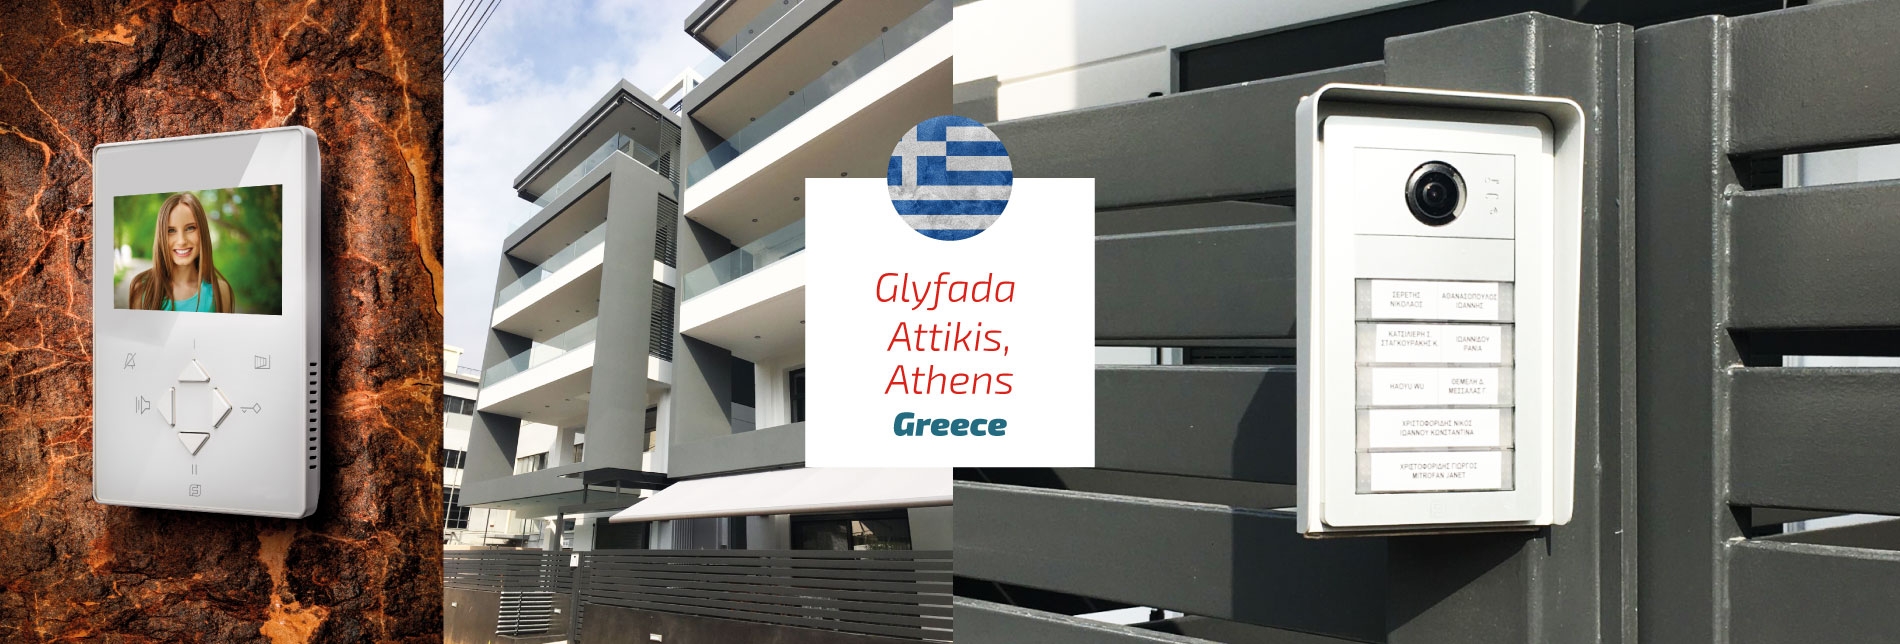 Europa Glyfada Attikis Atene Grecia